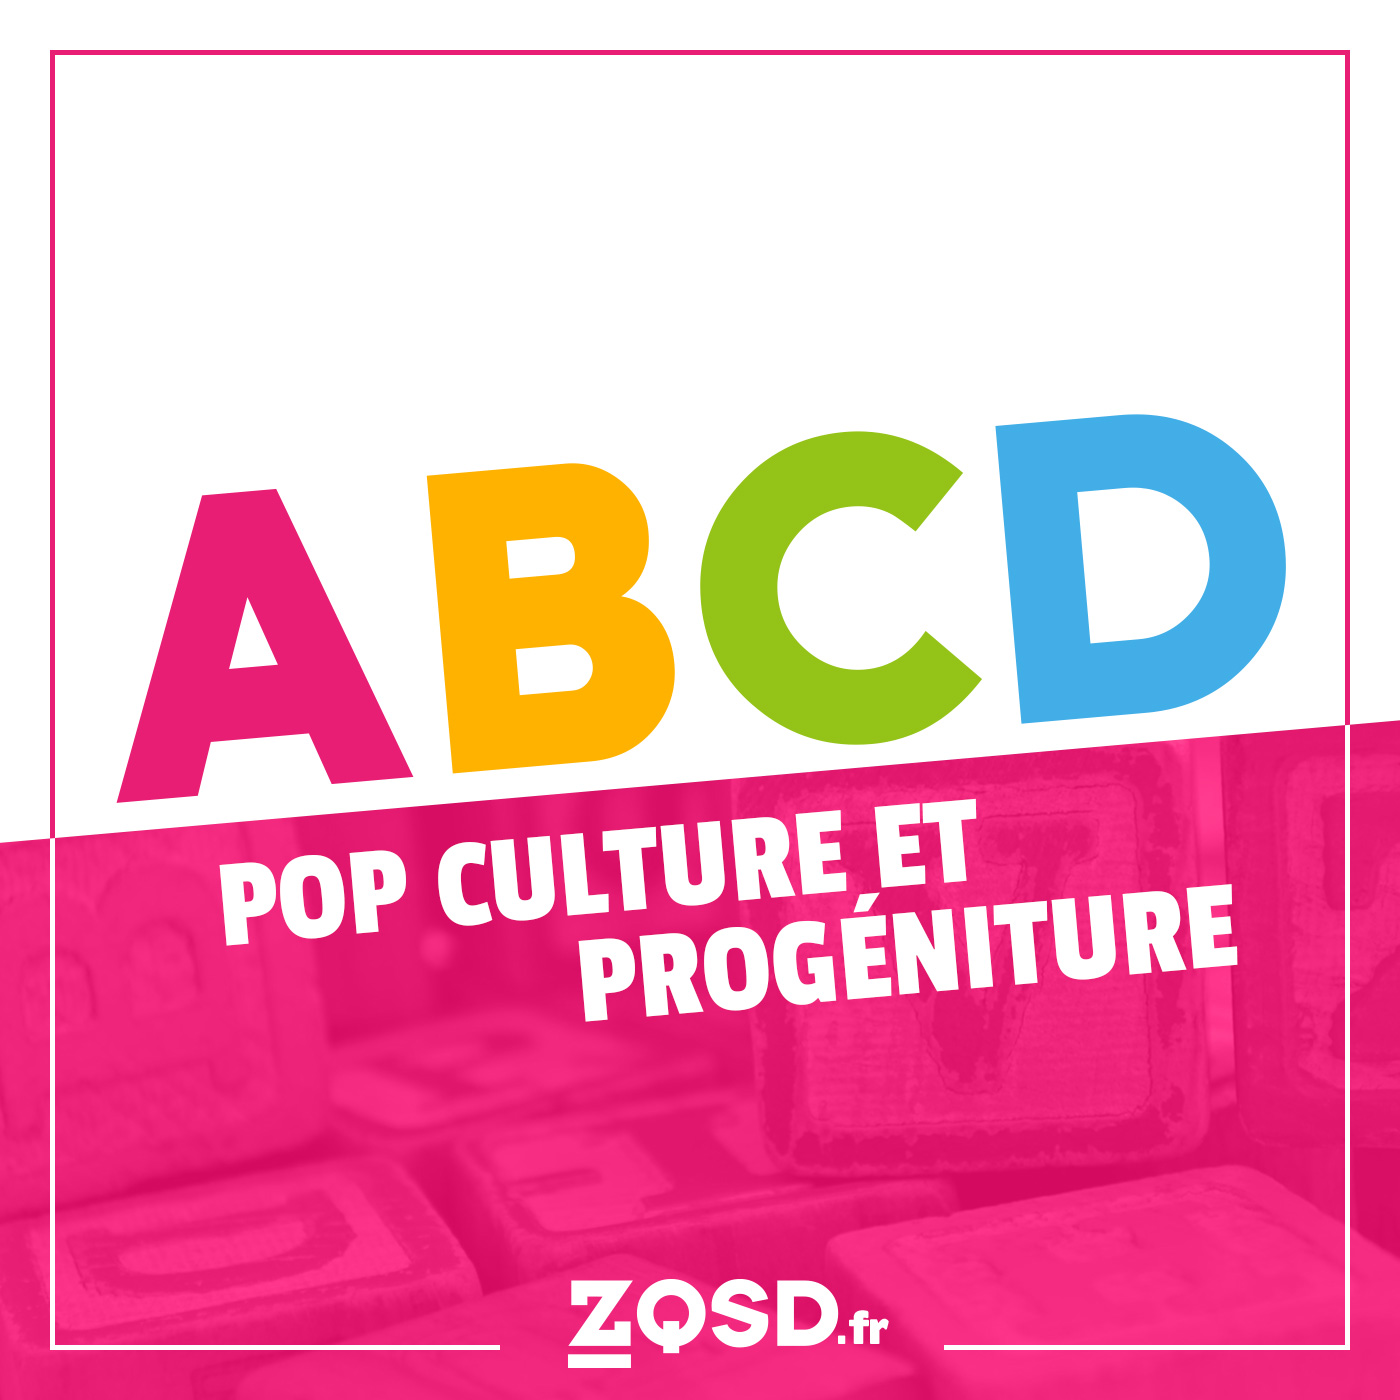 ZQSD.fr